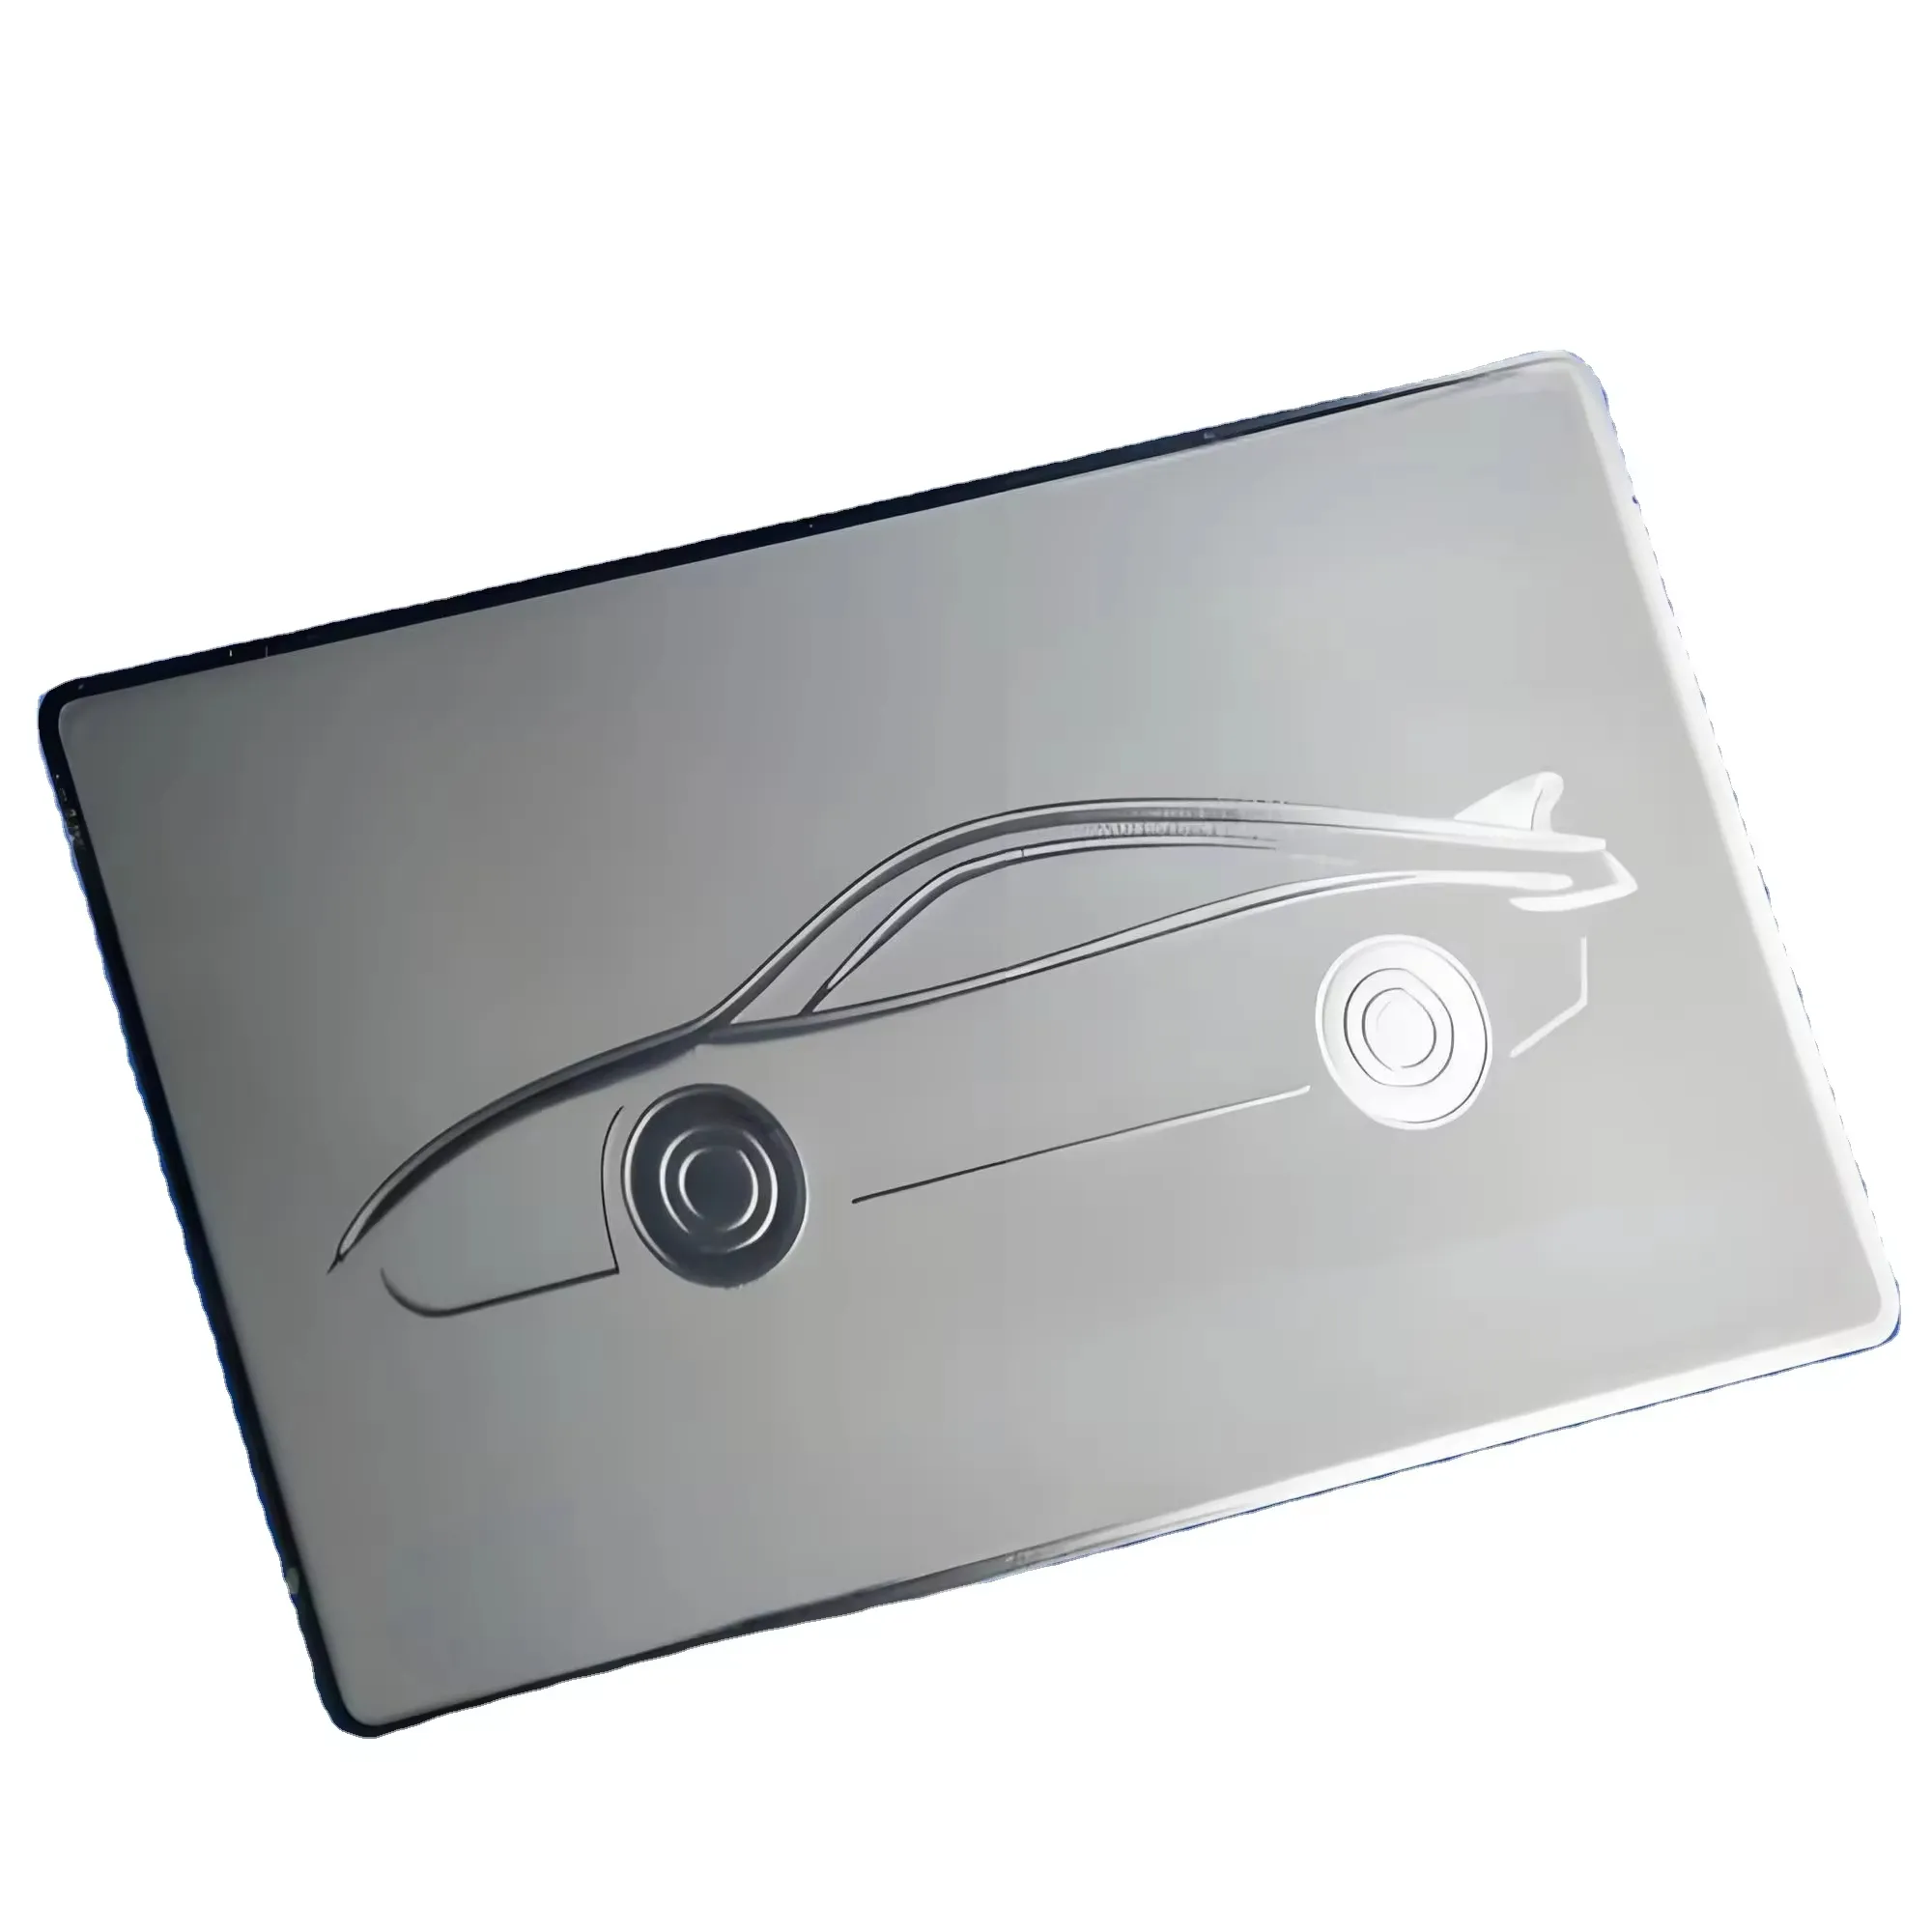 Üretici toptan fiyat özel baskılı ucuz paslanmaz çelik nfc metal kart metal kartvizit